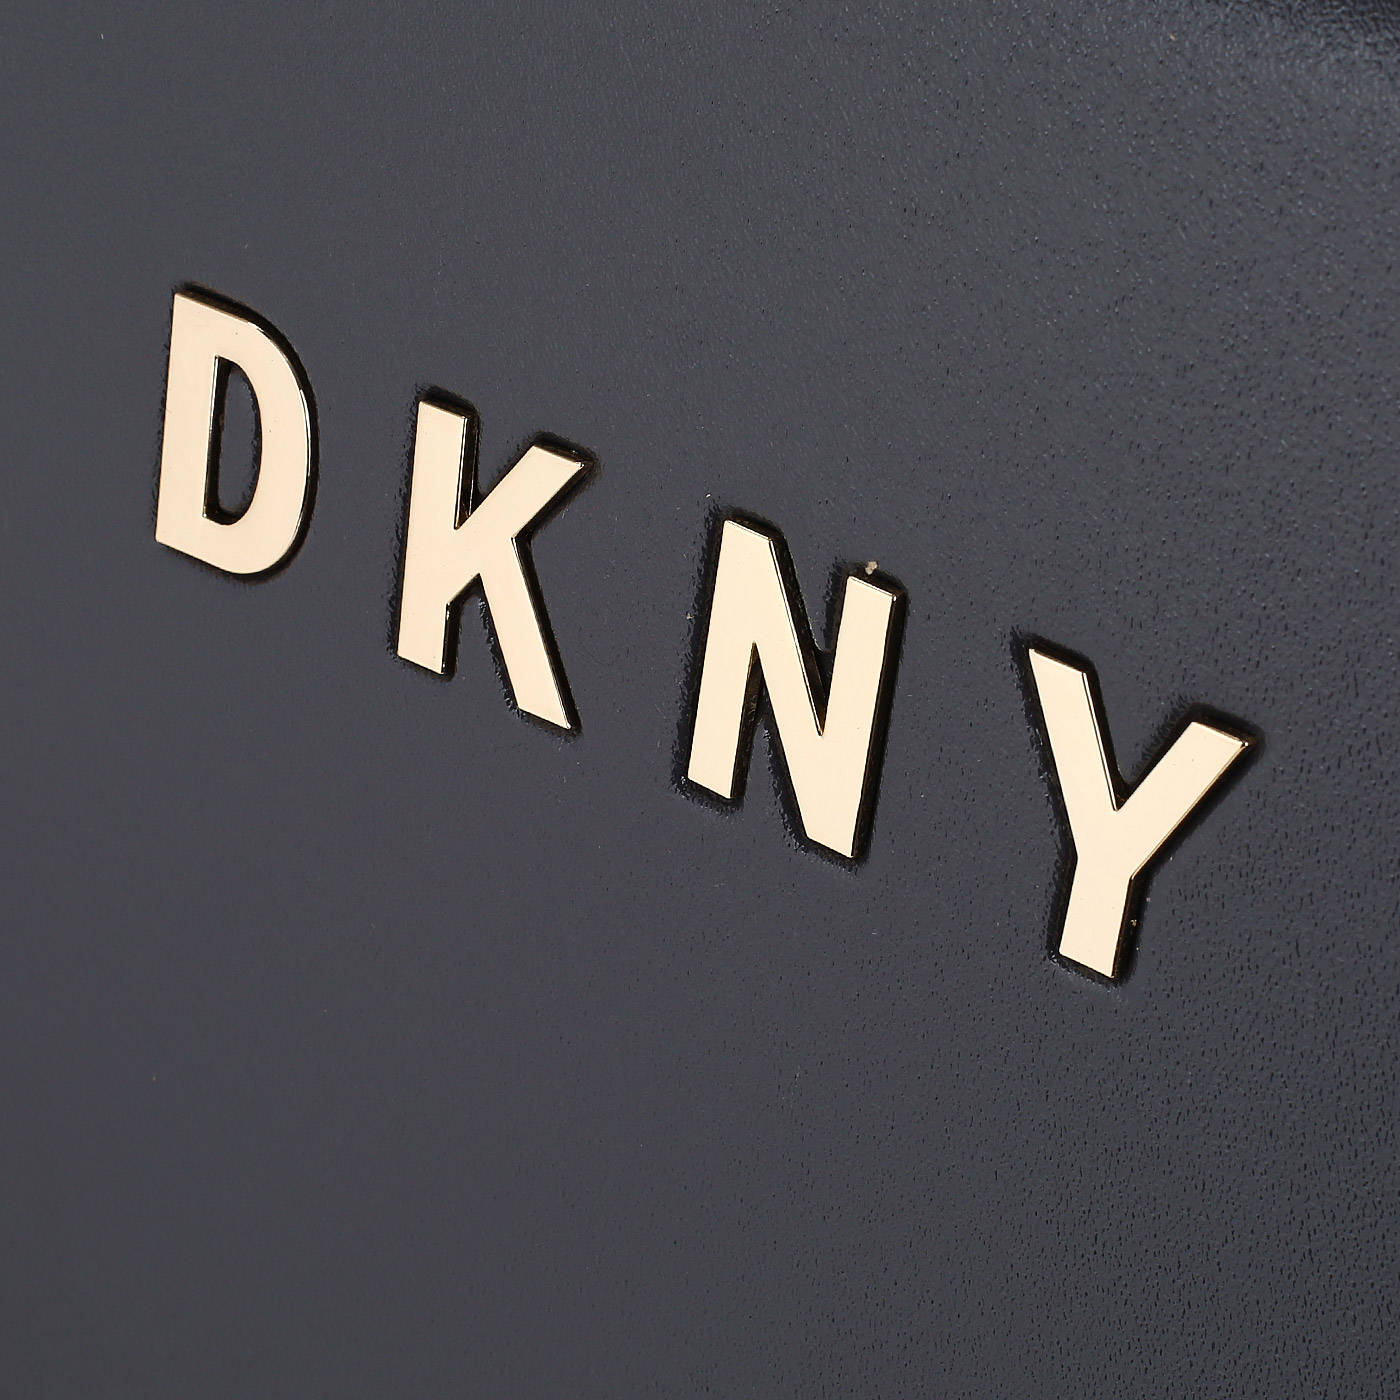 Чемодан средний M из ABS-пластика с кодовым замком DKNY DKNY-014 Metal Logo